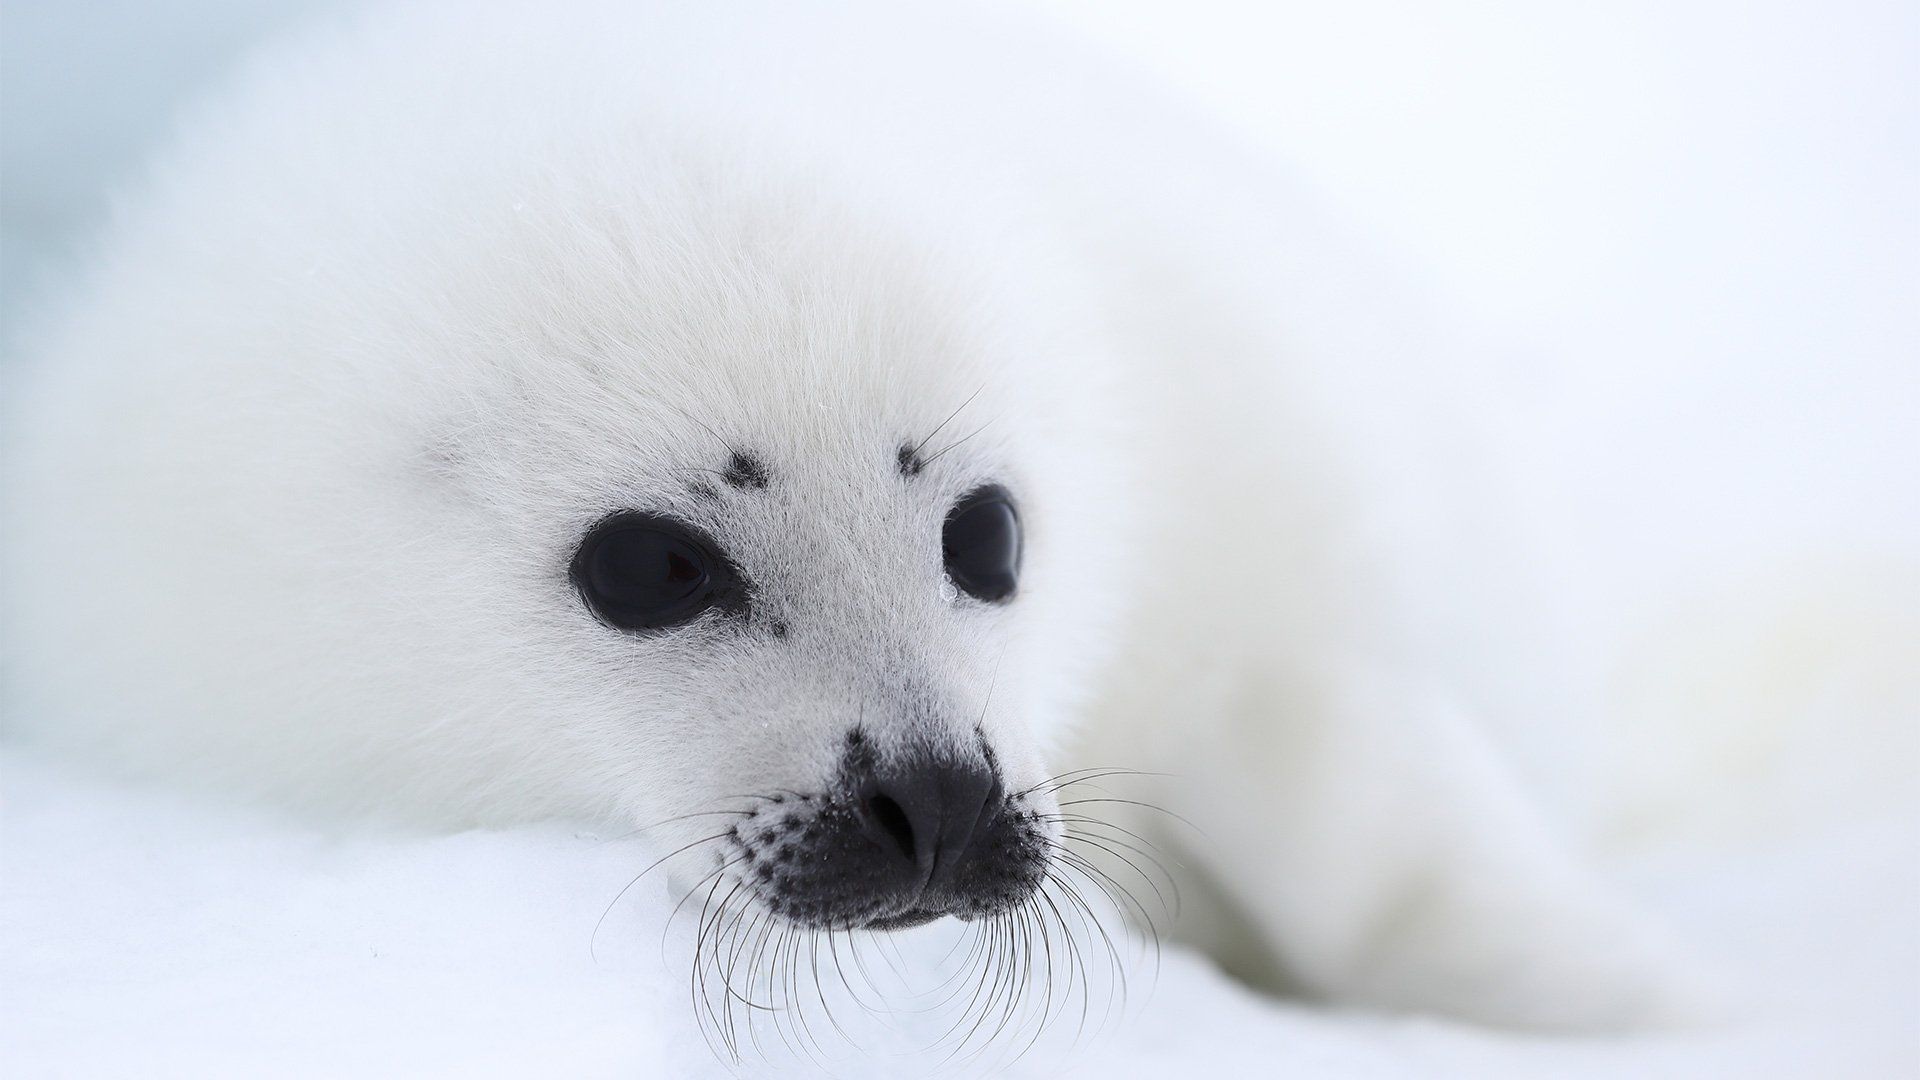 Seal cub sitting against a snowy background.